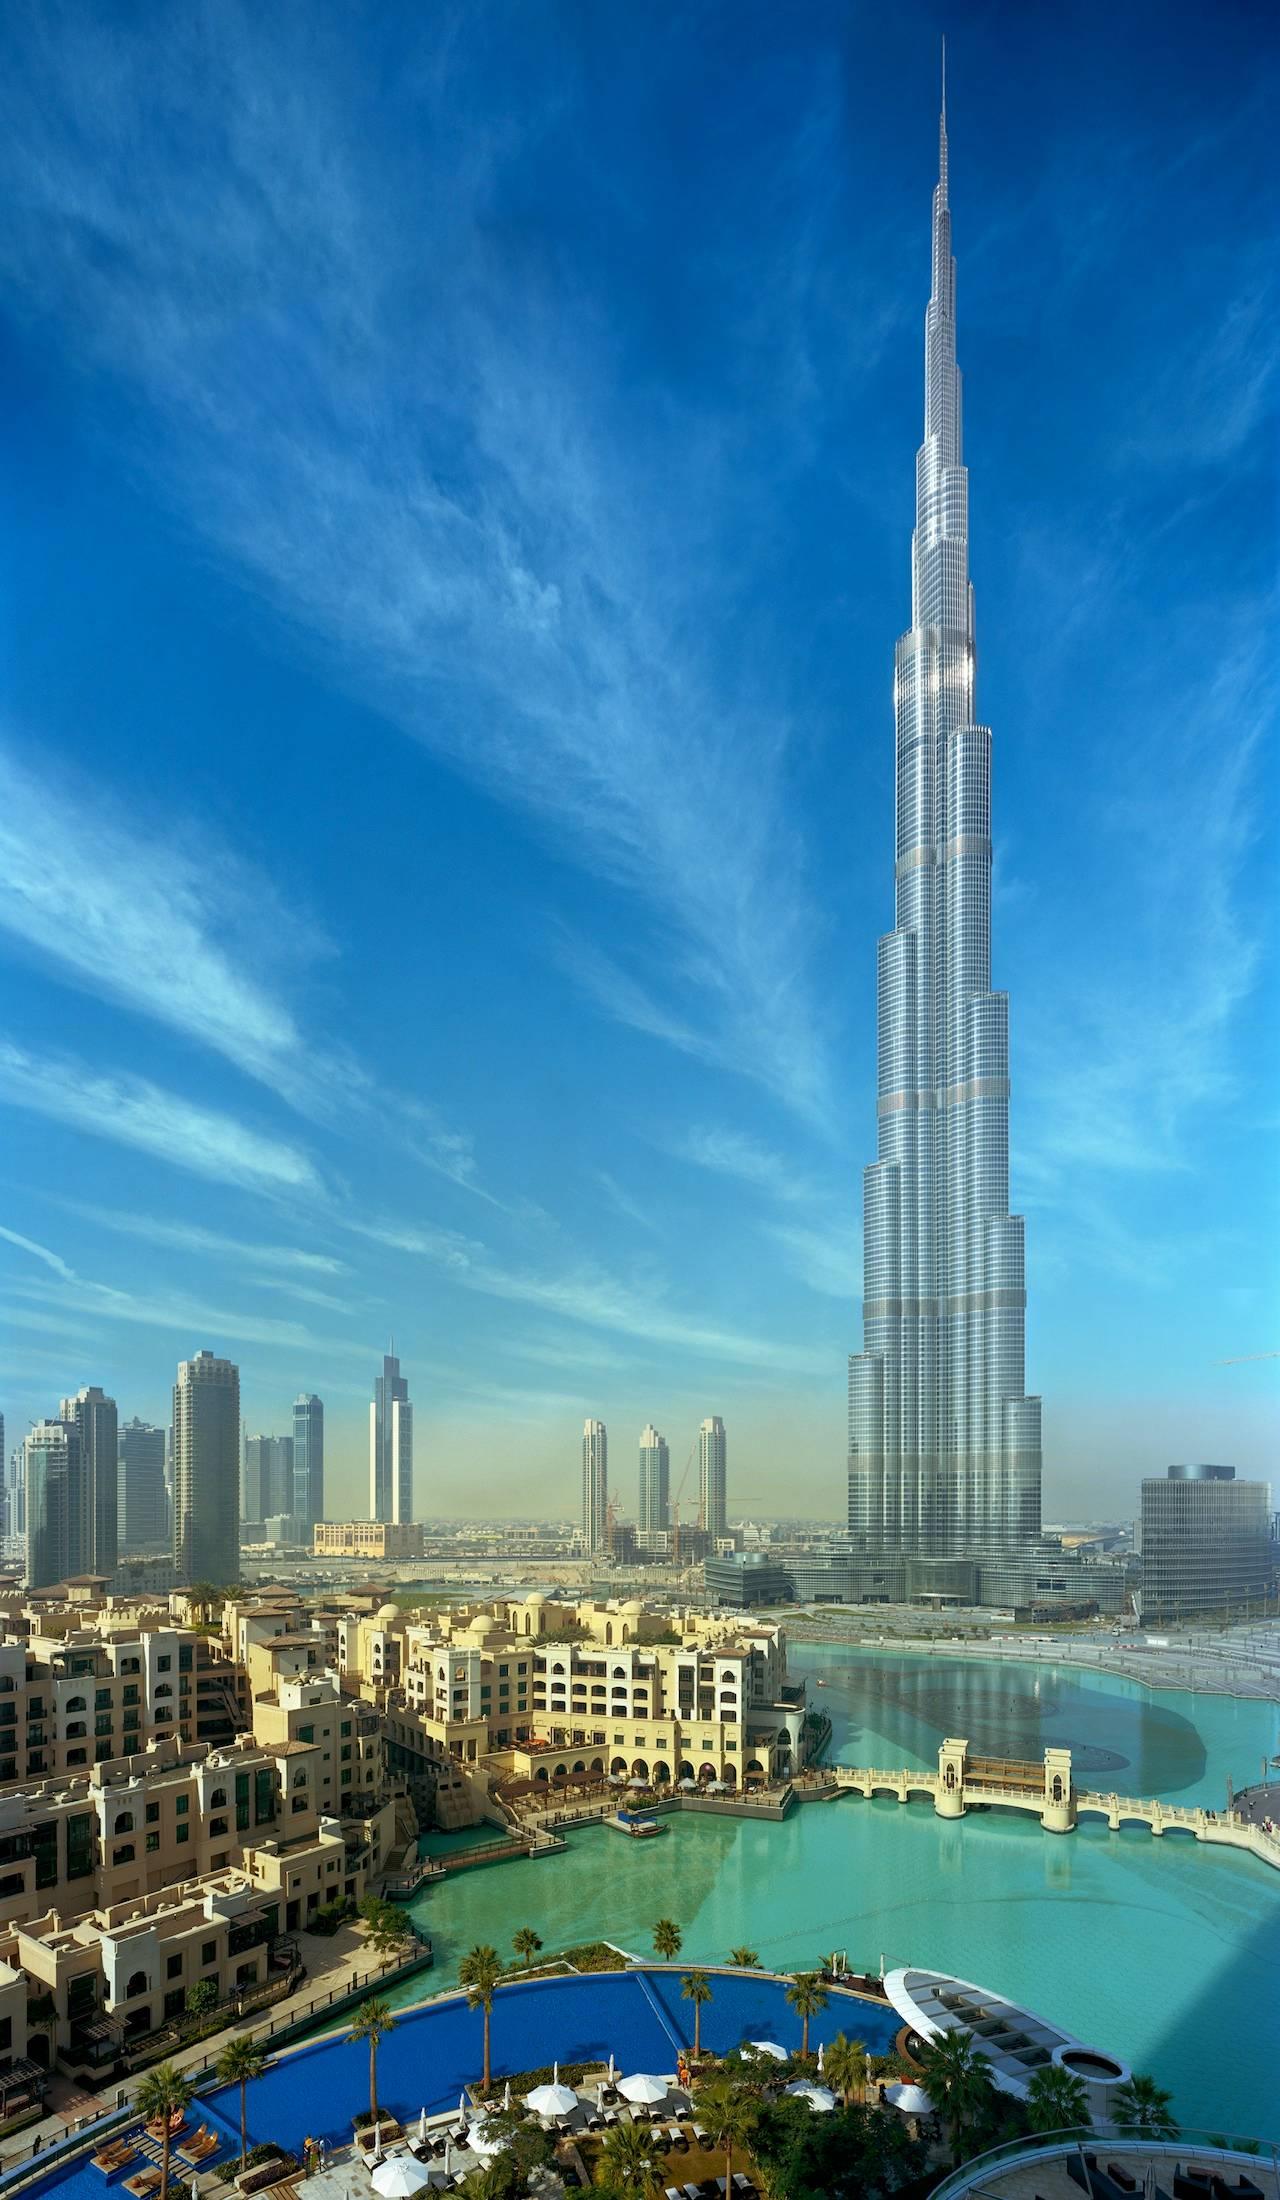 Dubai Burj Khalifa - Photograph by Robert Polidori